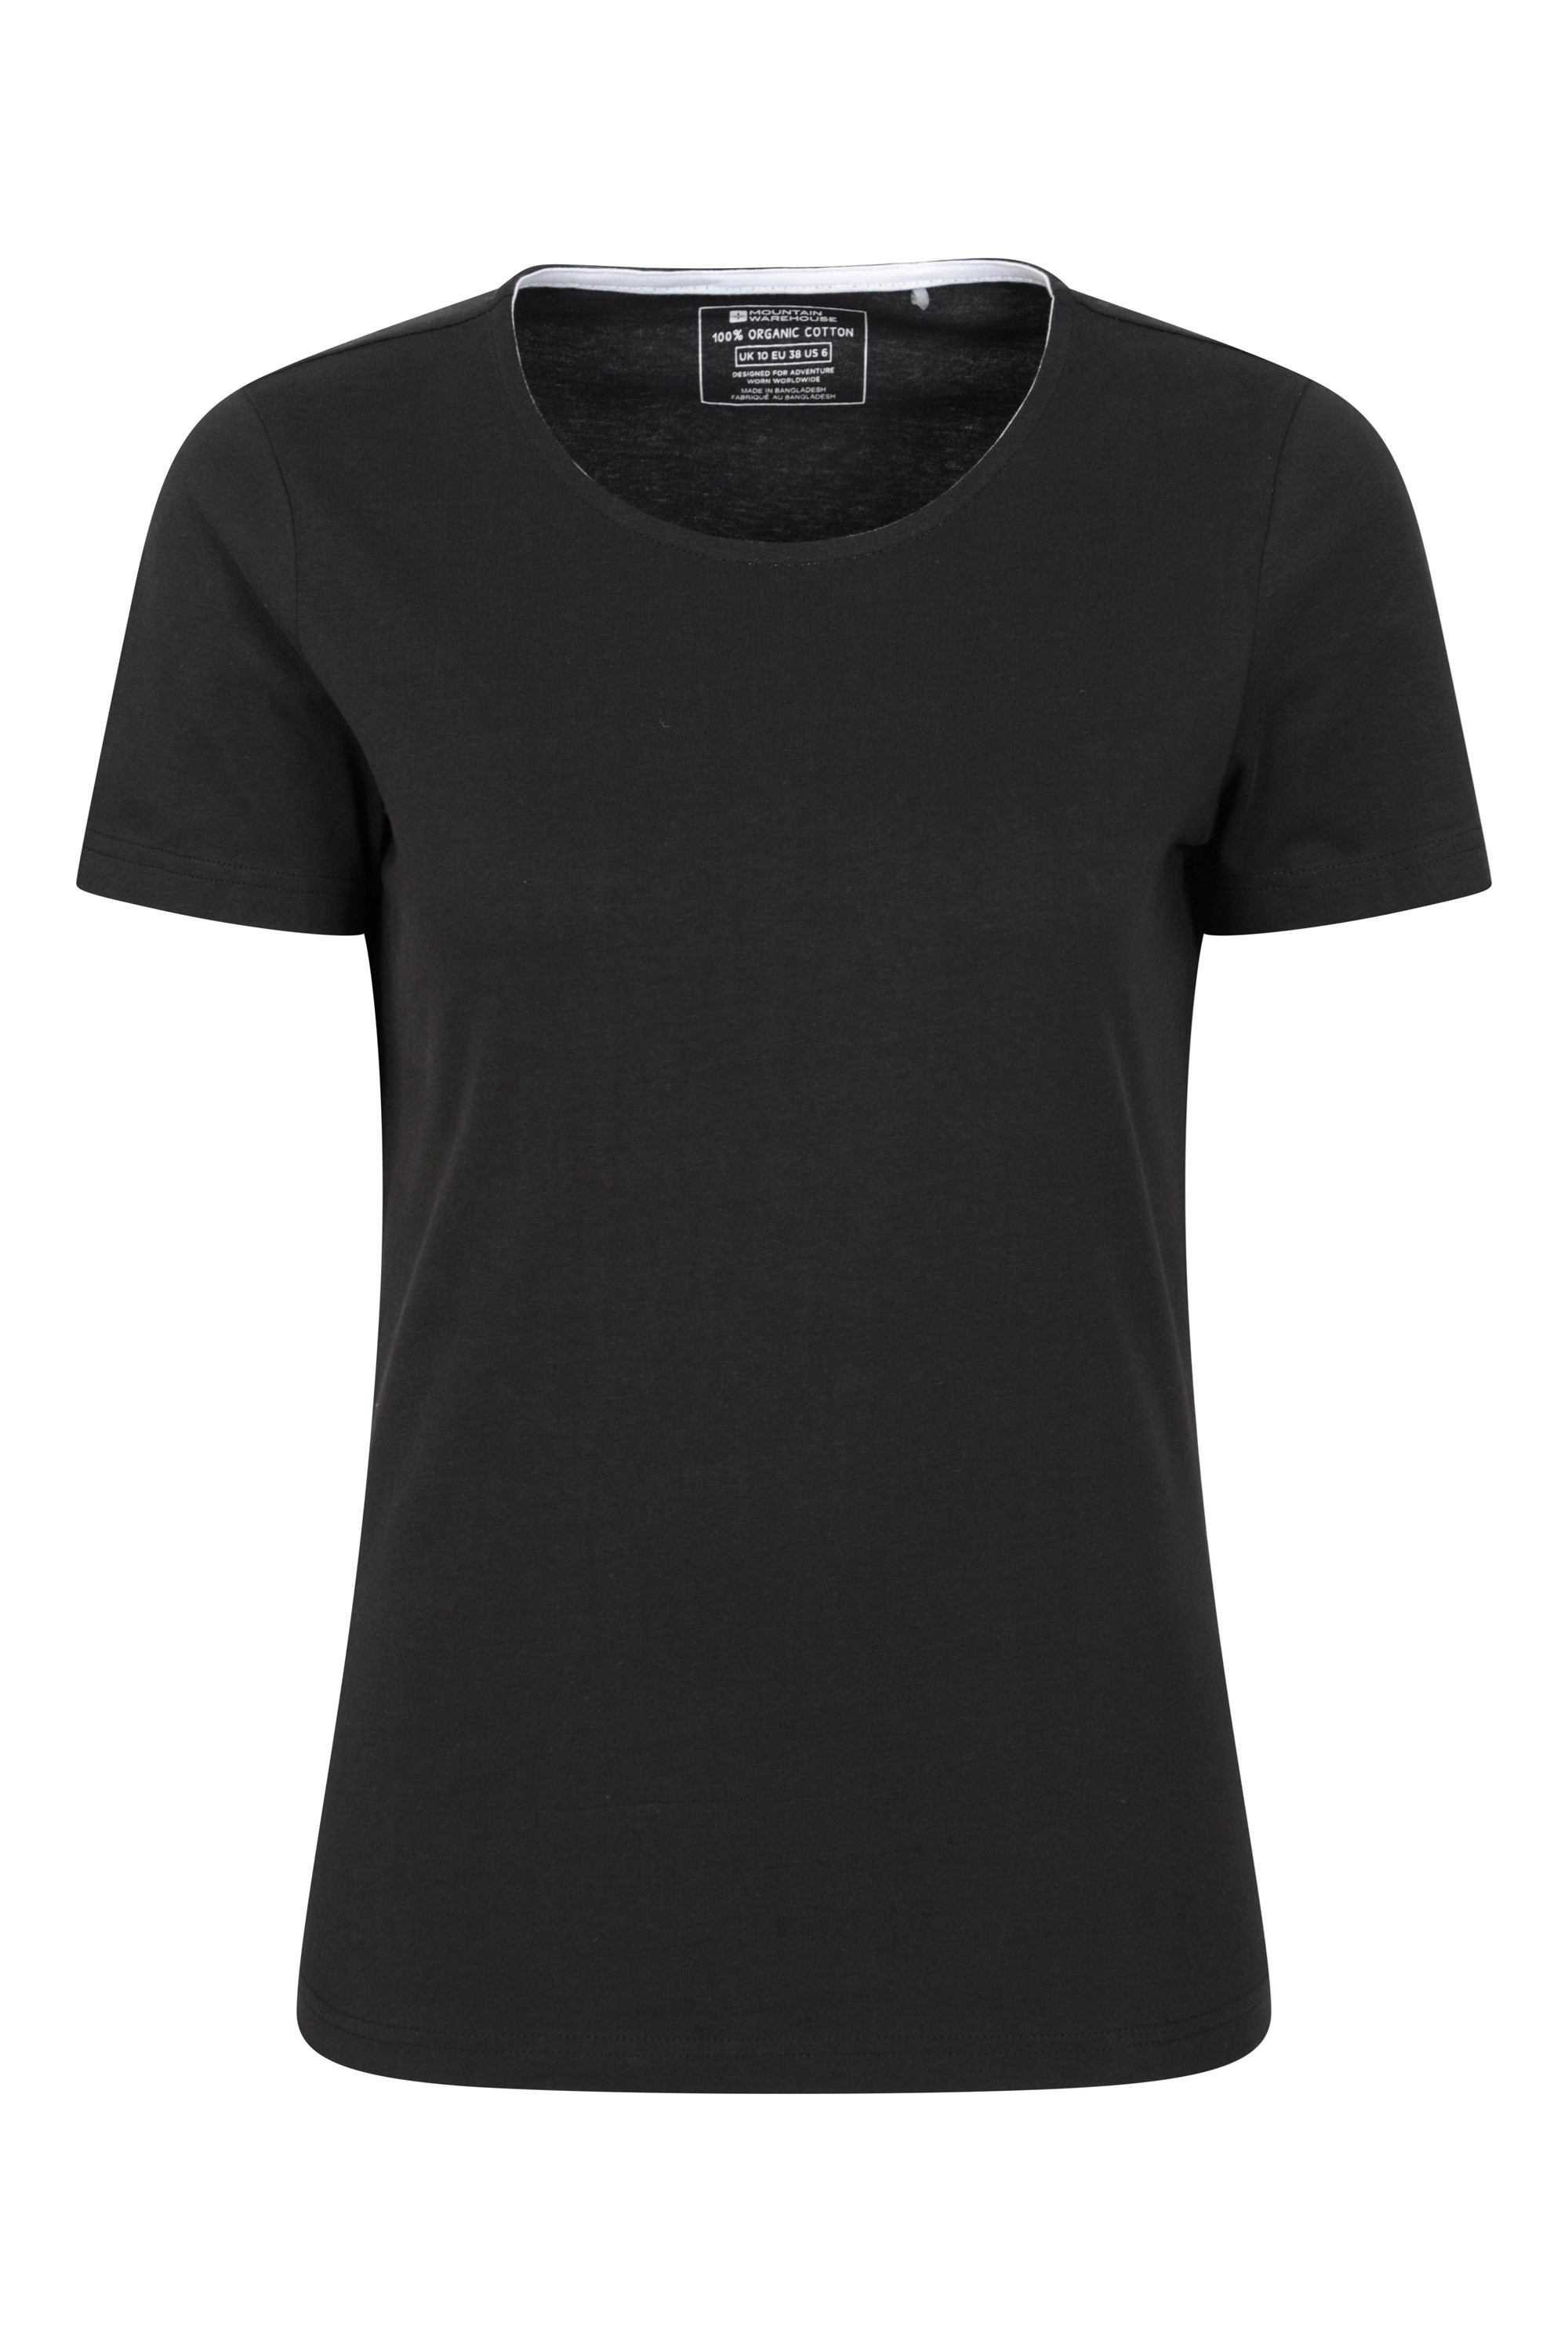 Eden Round Neck Womens Organic T-shirt - Black